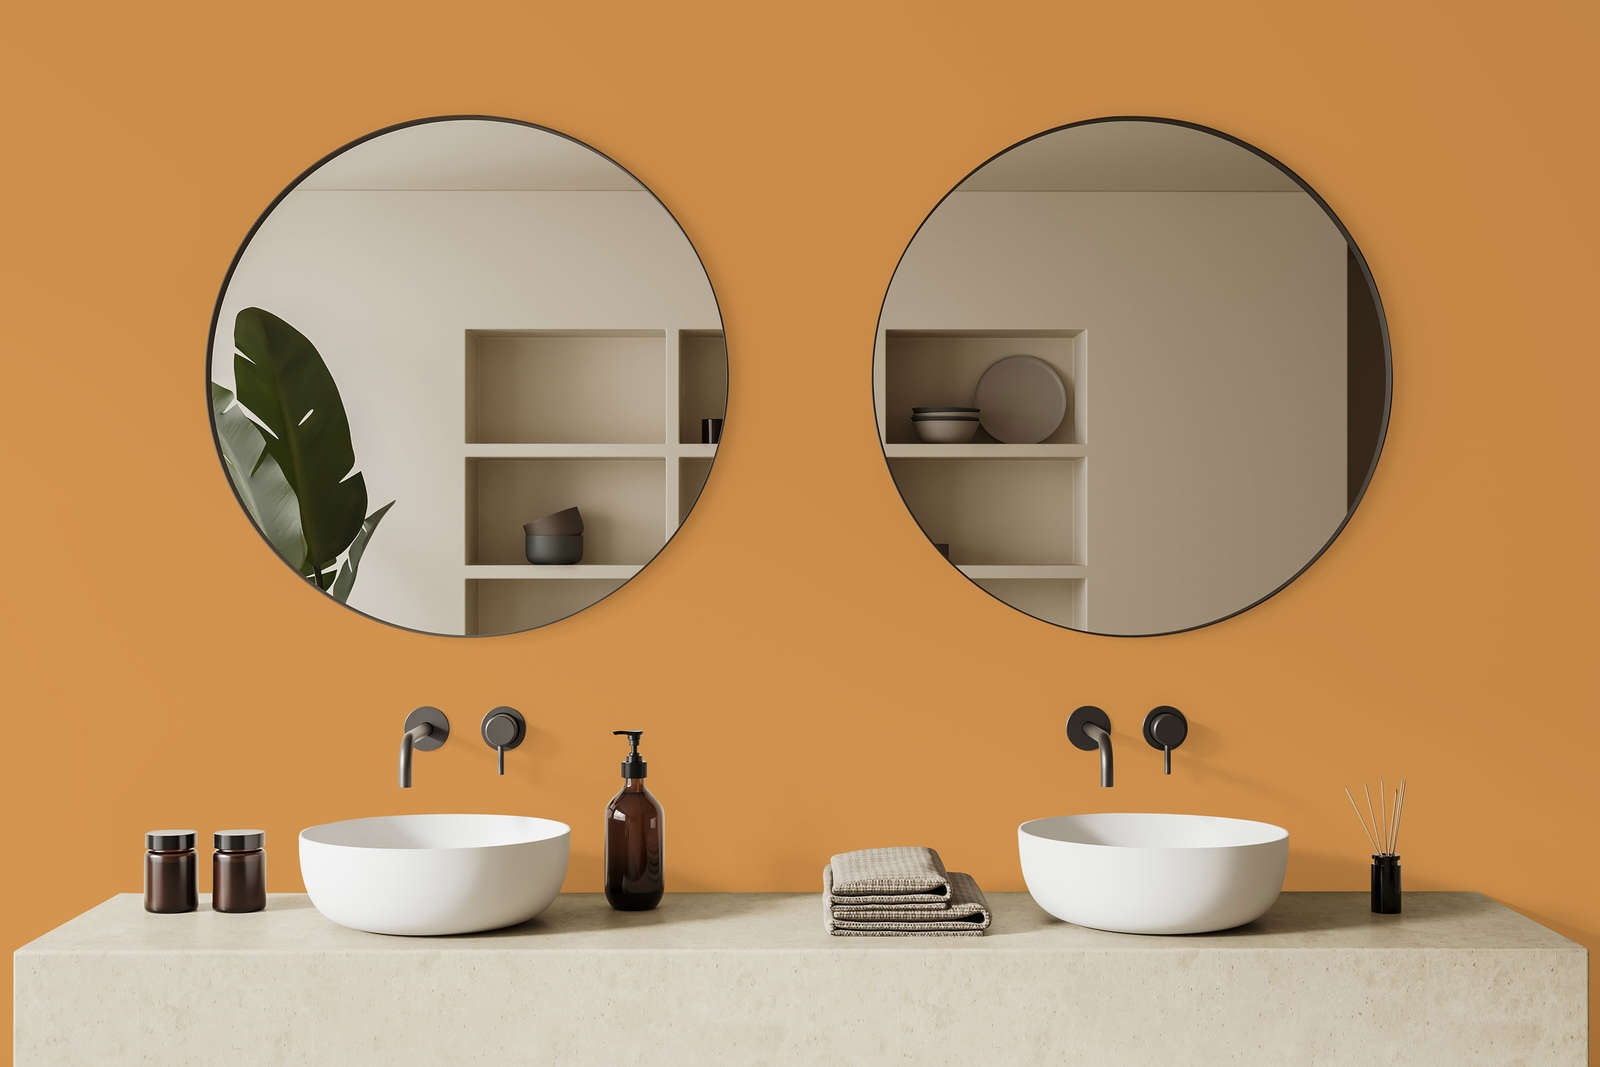             Premium Wall Paint Warm Orange »Beige Orange/Sassy Saffron« NW813 – 5 litre
        